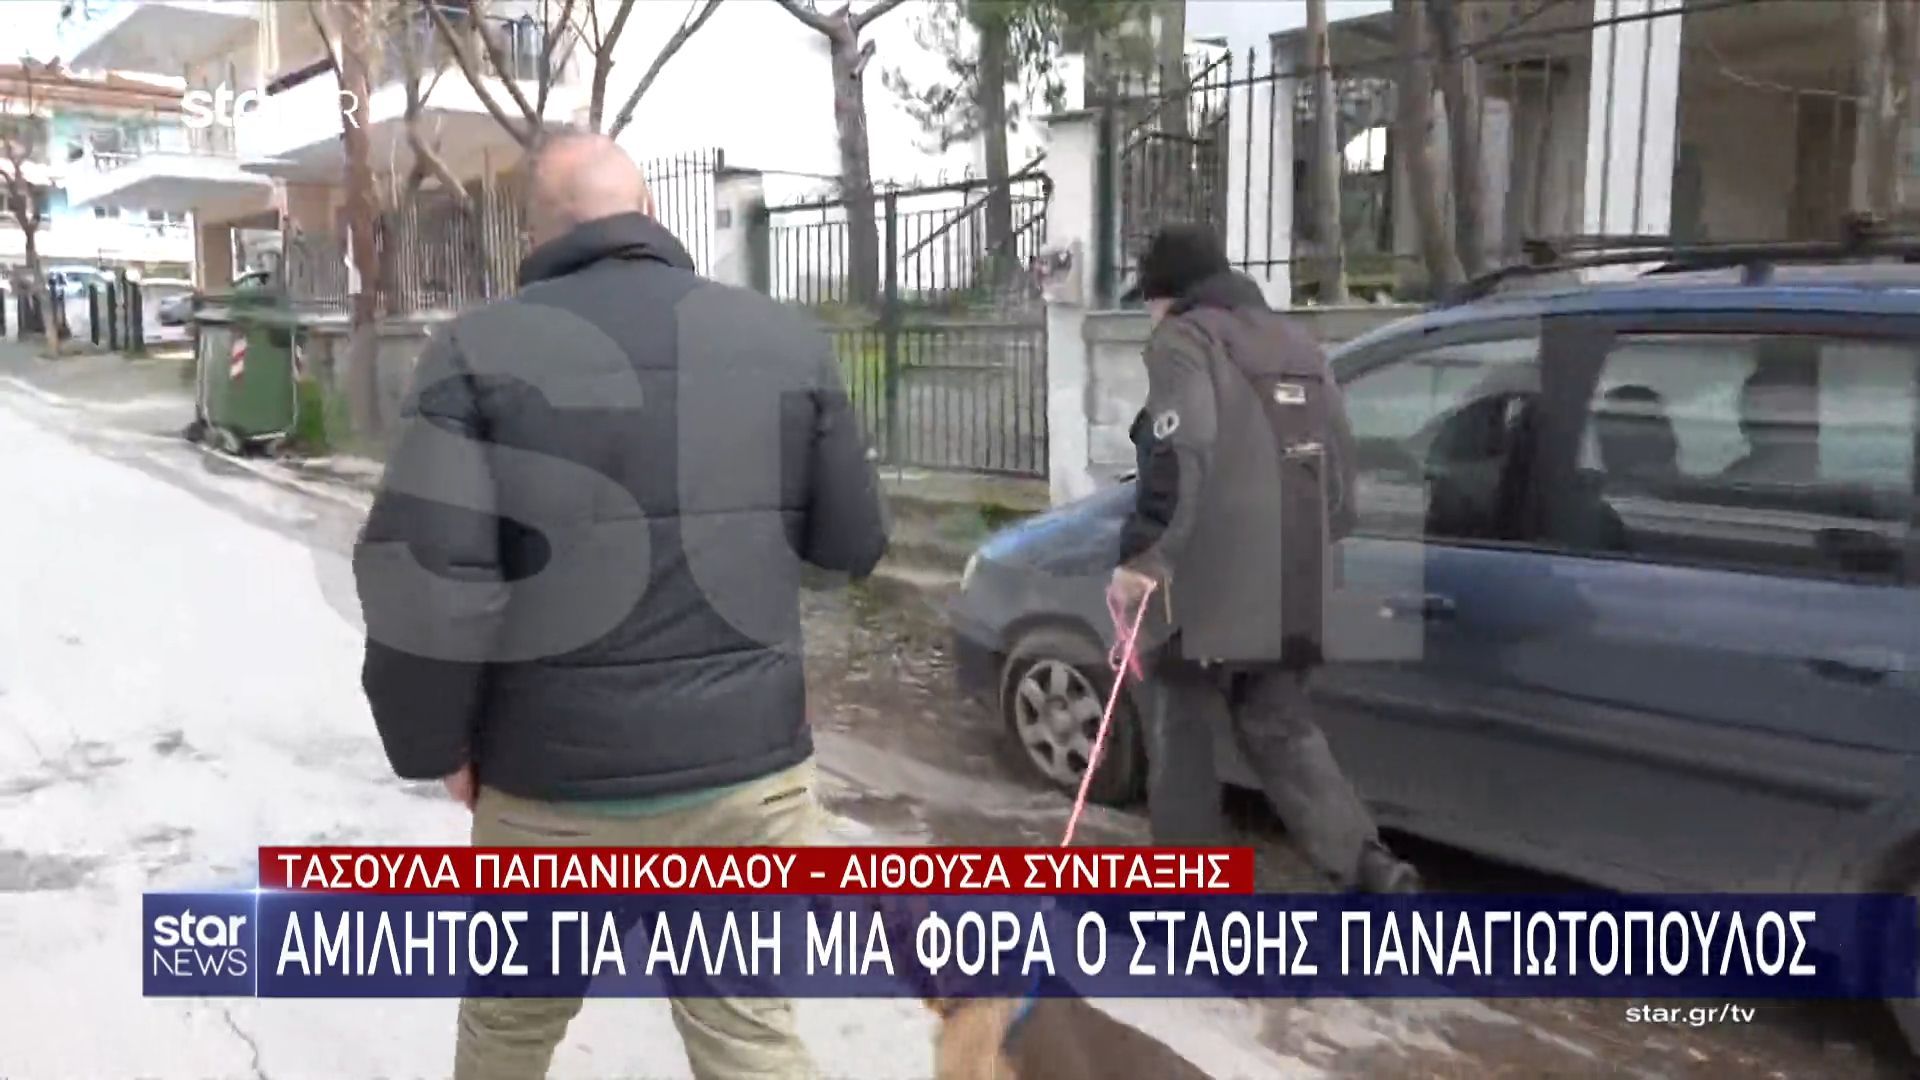 Στάθης Παναγιωτόπουλος: Παραμένει αμίλητος ο παρουσιαστής μπροστά στις κάμερες